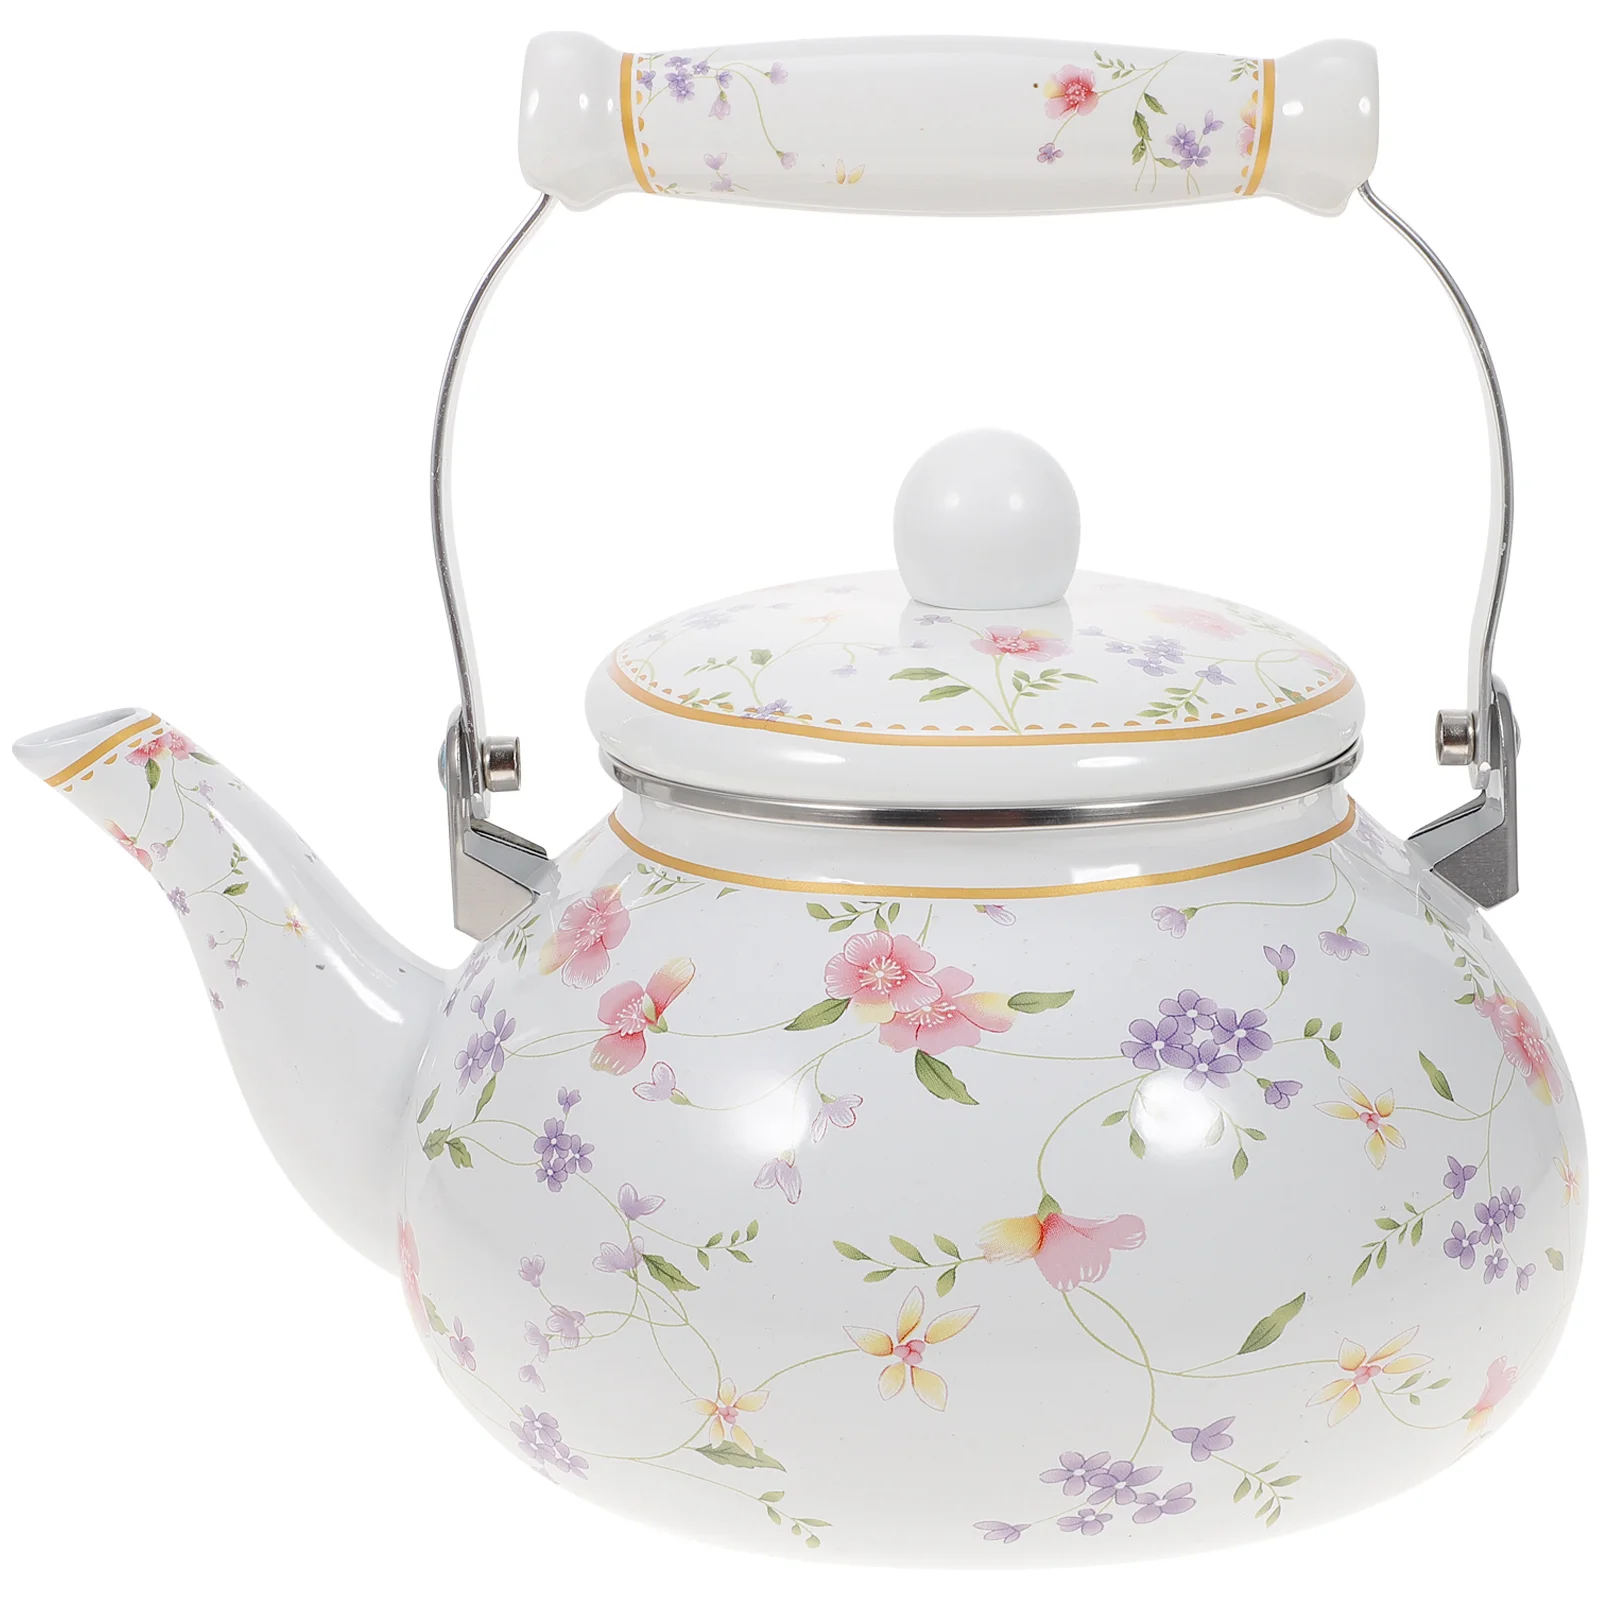 

Enamel Tea Kettle 1.5L Porcelain Teapot Stovetop Decorative Teapot Strainer Cool Handle Vintage Floral Teapot Hot Water Tea